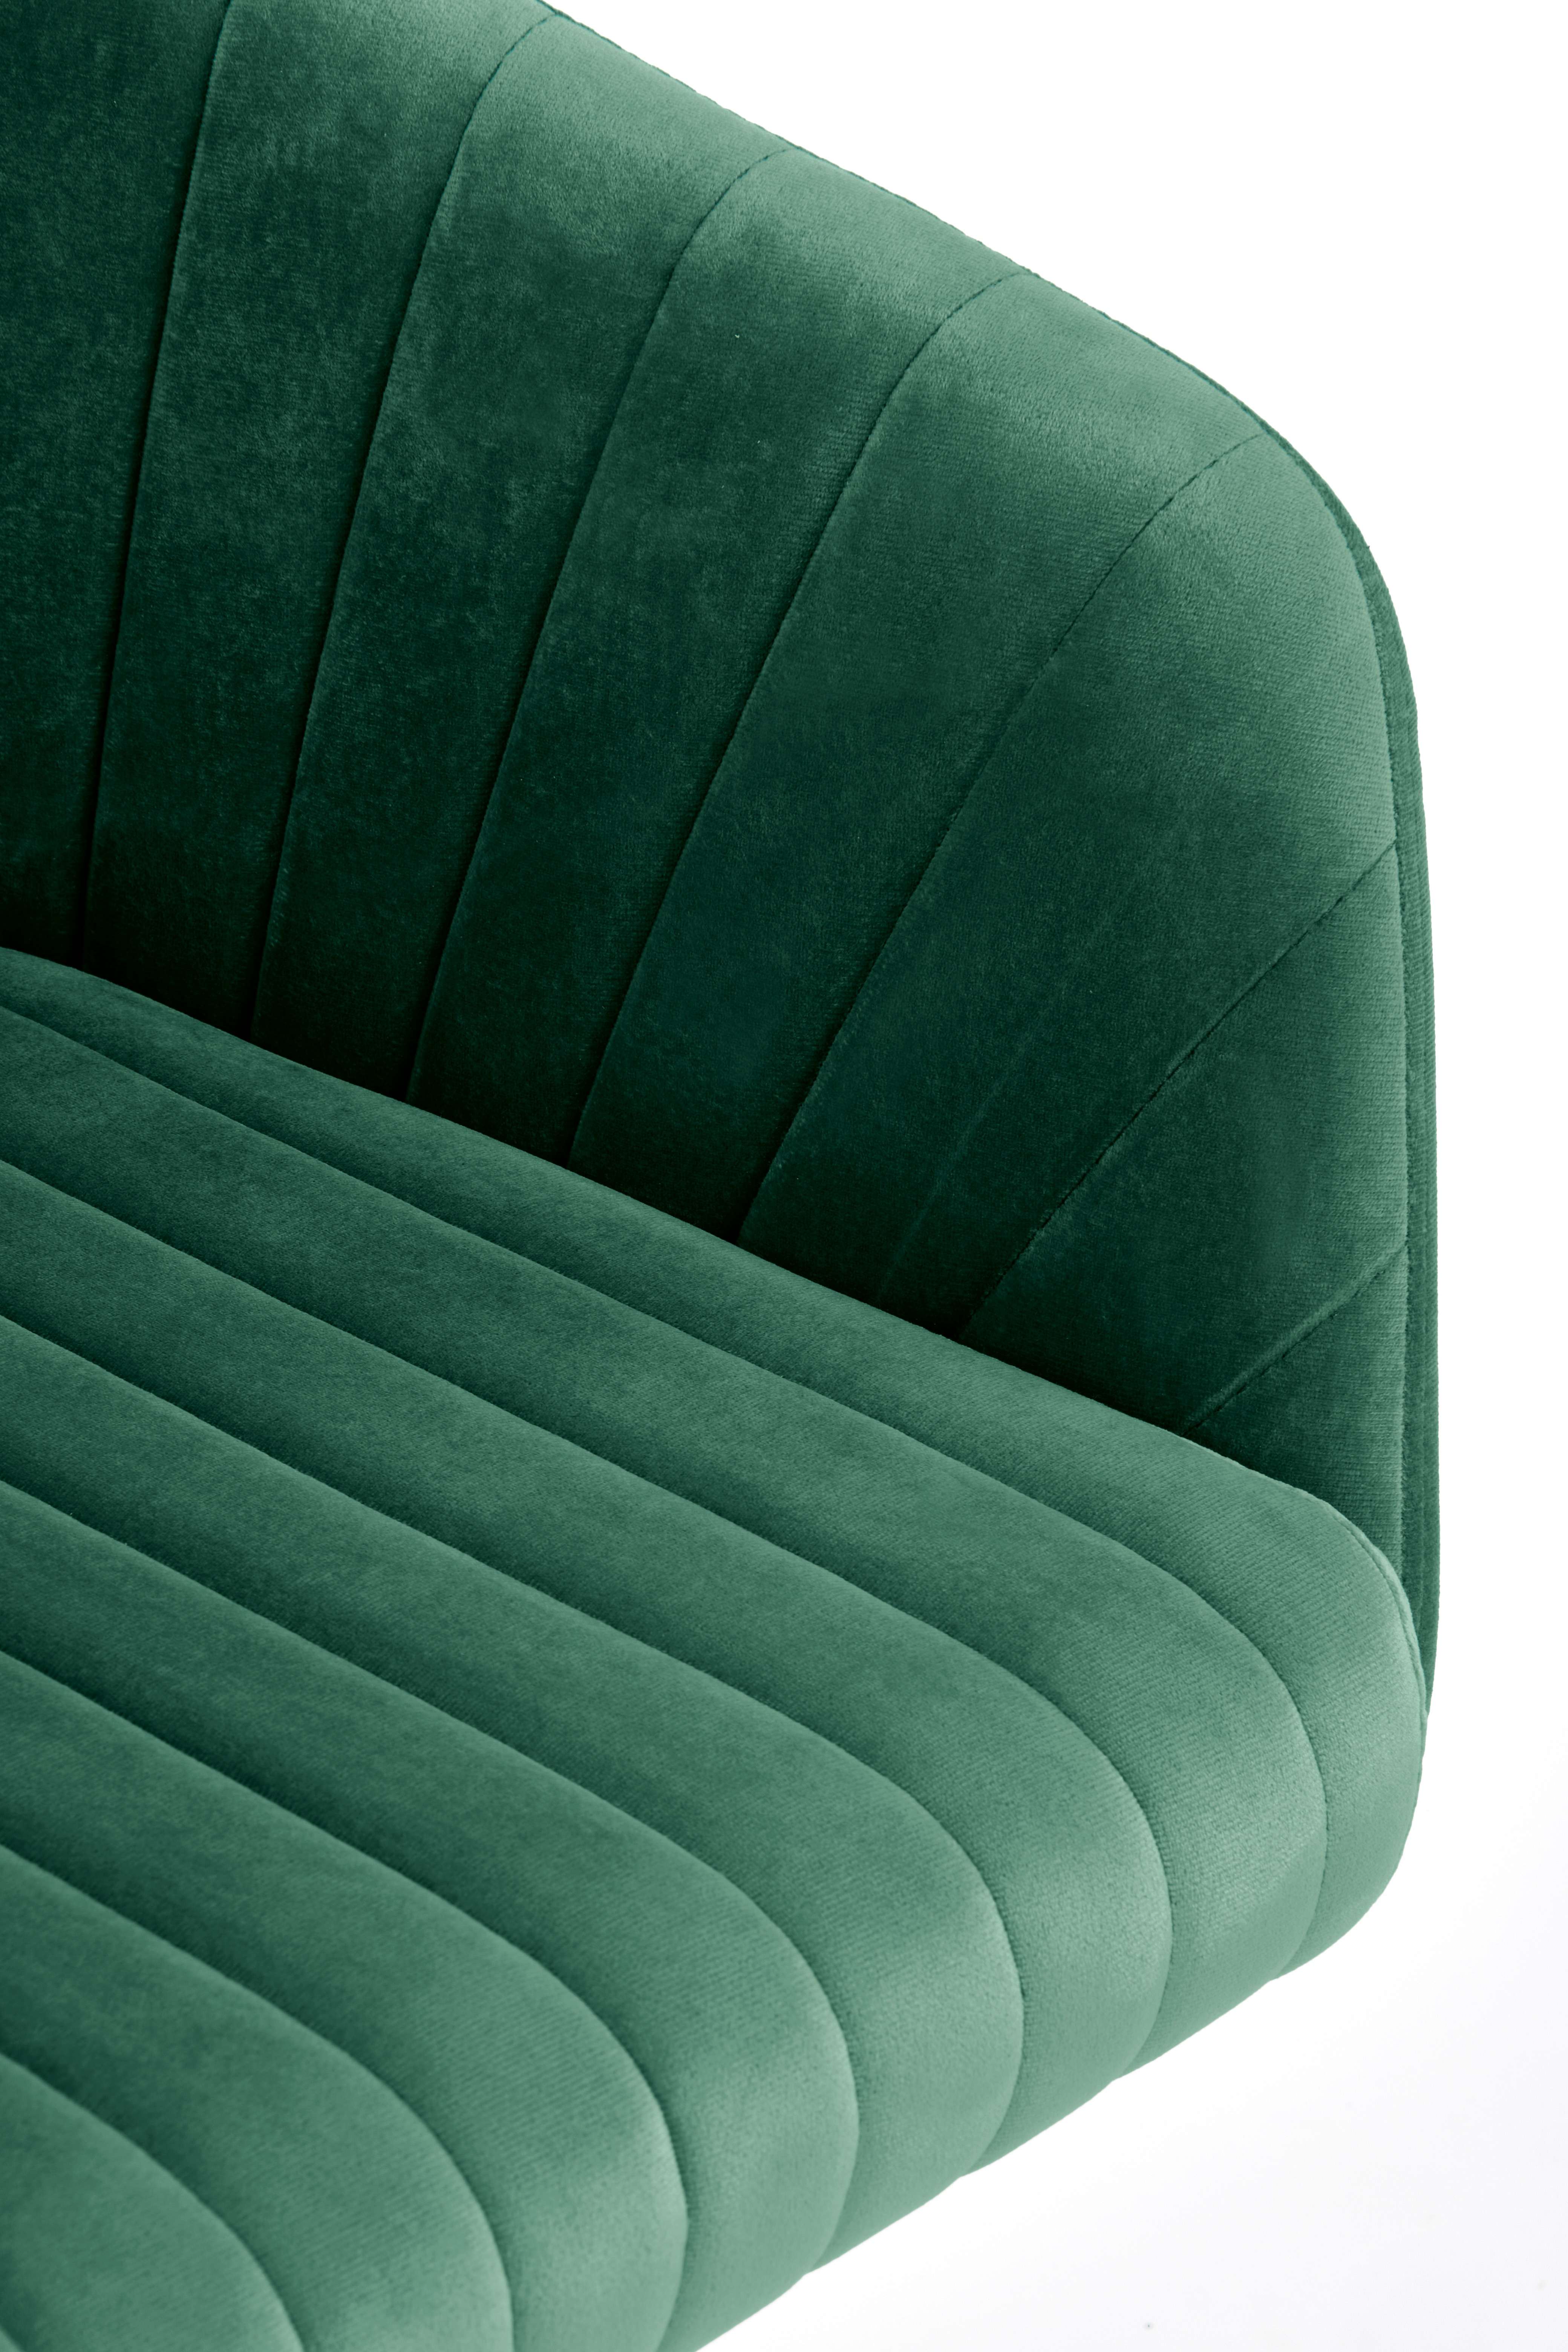 FRESCO fotel młodzieżowy ciemny zielony velvet fresco fotel młodzieżowy ciemny zielony velvet